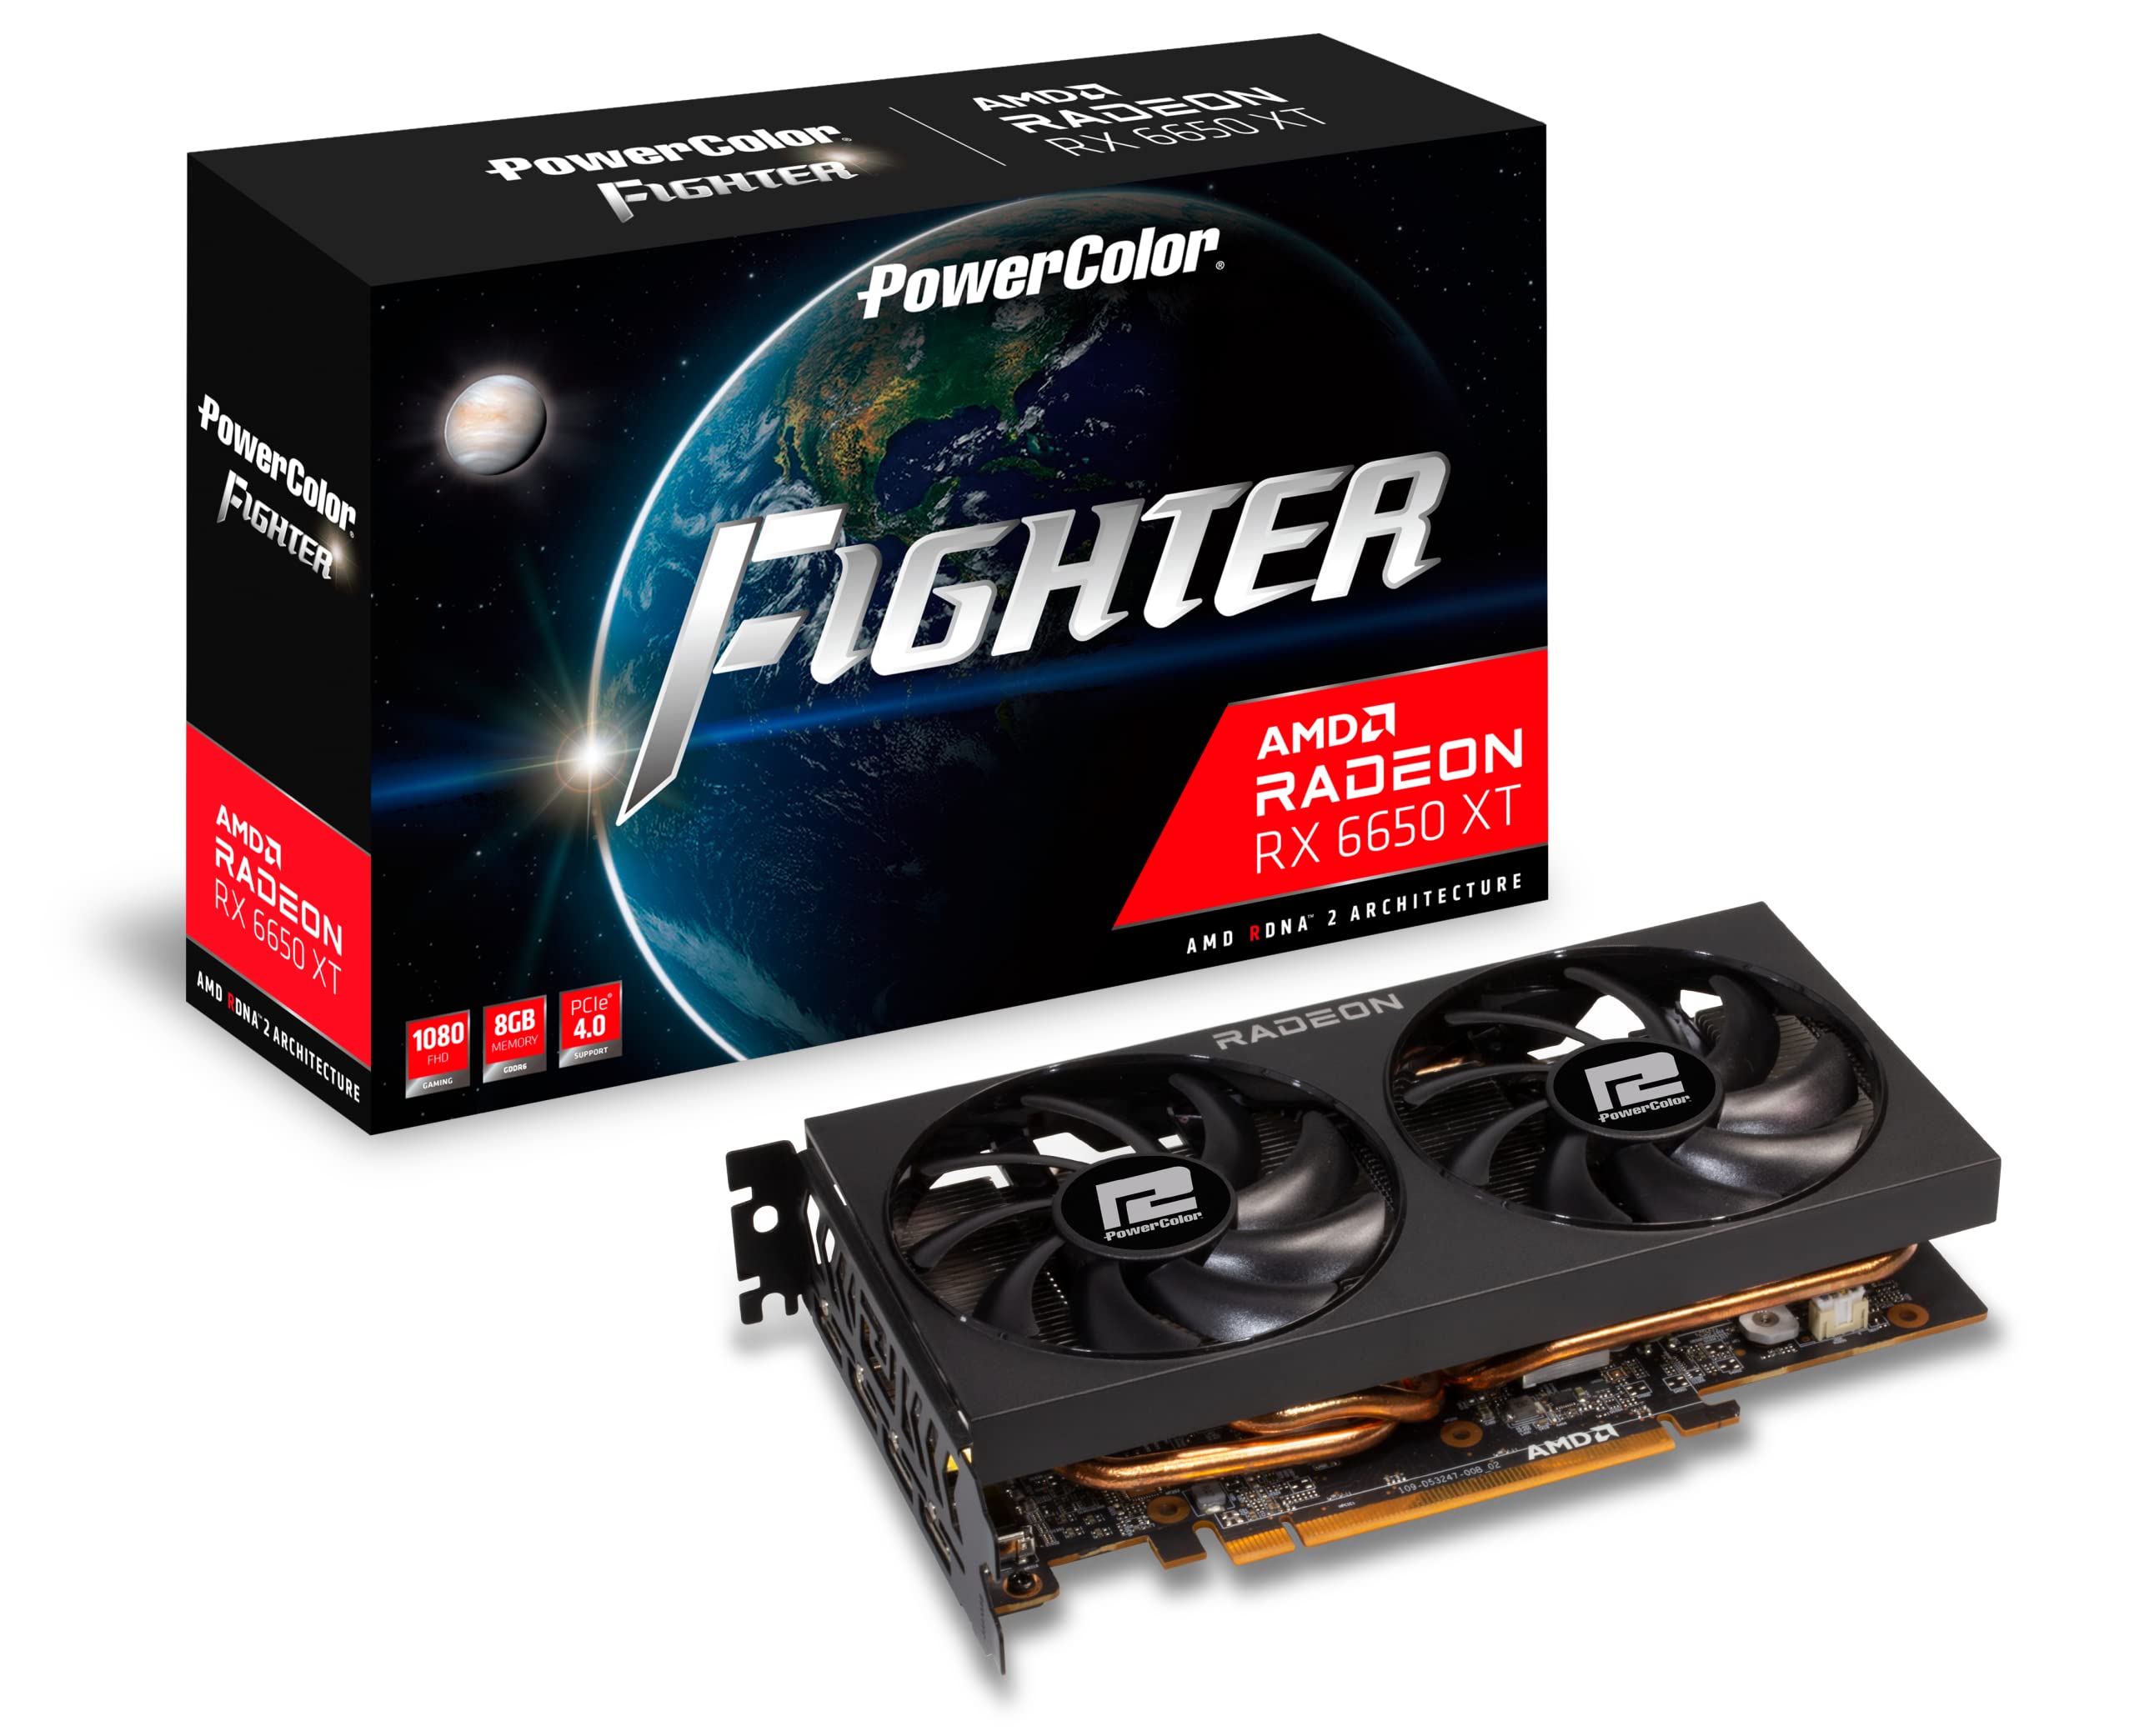 PowerColor Fighter AMD Radeon RX 6650 XT グラフィックカード 8GB GDDR6メモリ付き並行輸入品